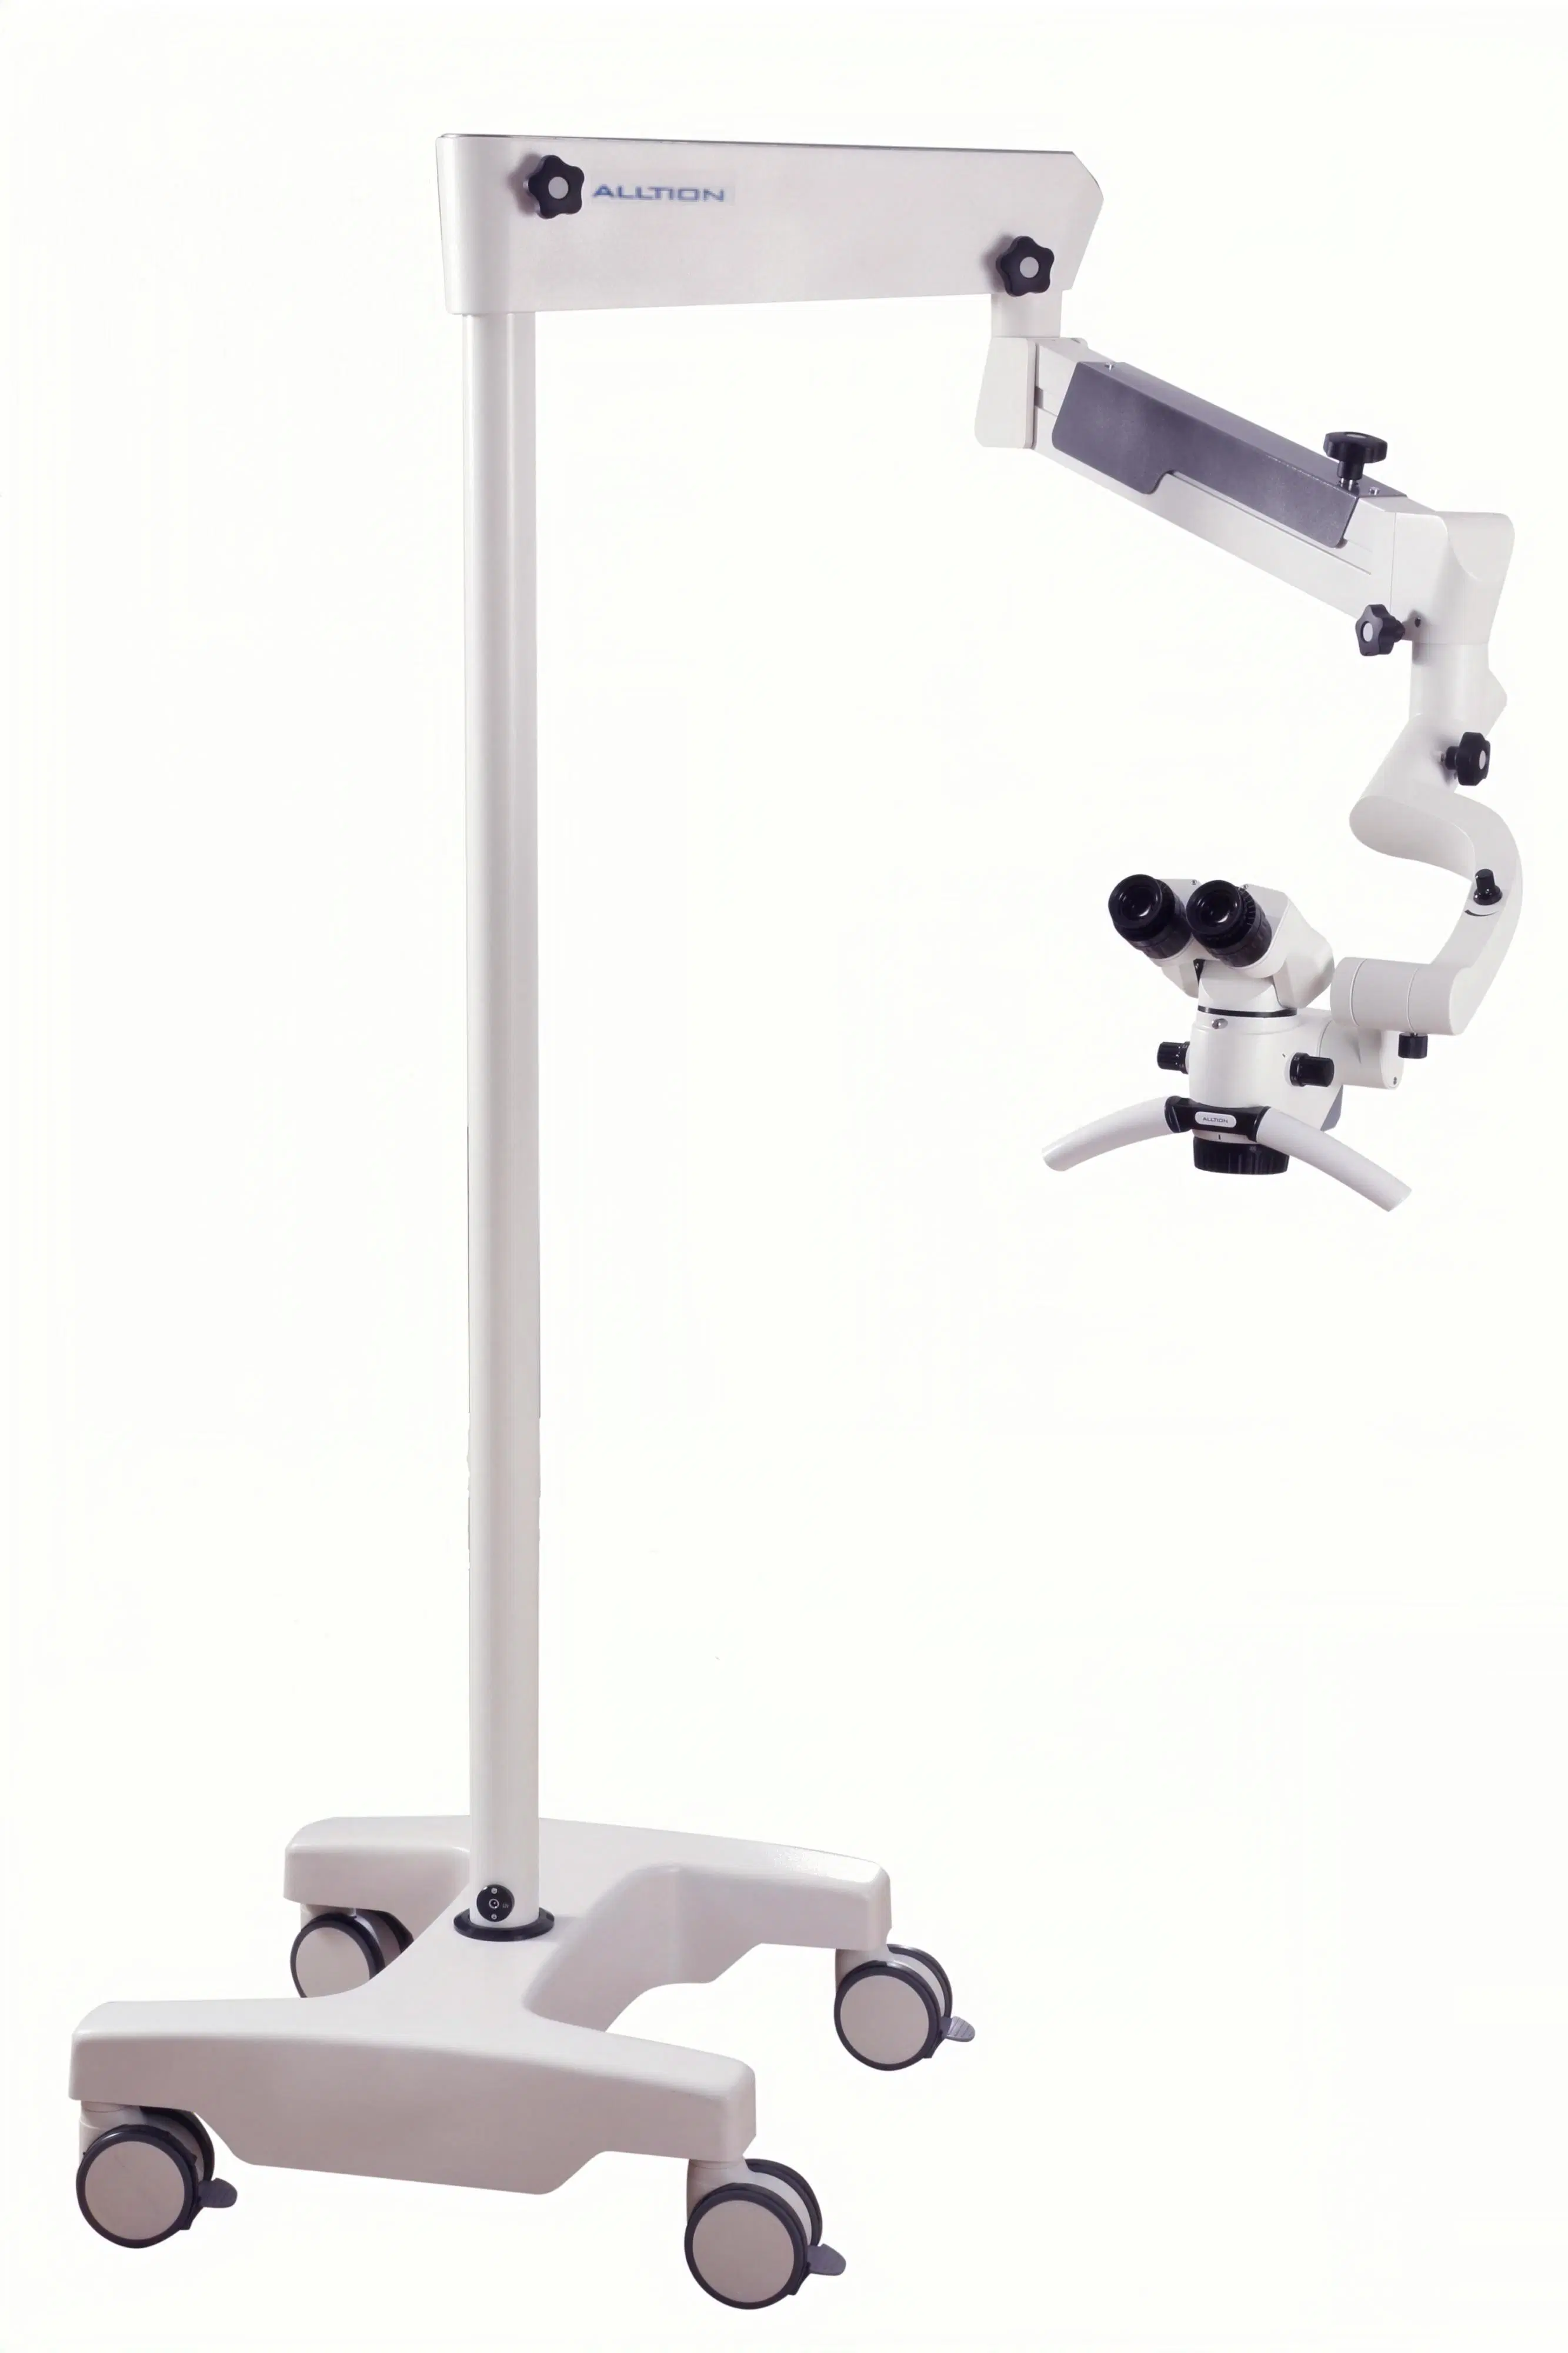 Am-2000 microscopio quirúrgico para la operación de cirugía que operan en otorrinolaringología ortopedia dental cirugía de la mano neurocirugía, Andrología y urología veterinaria P &amp; R